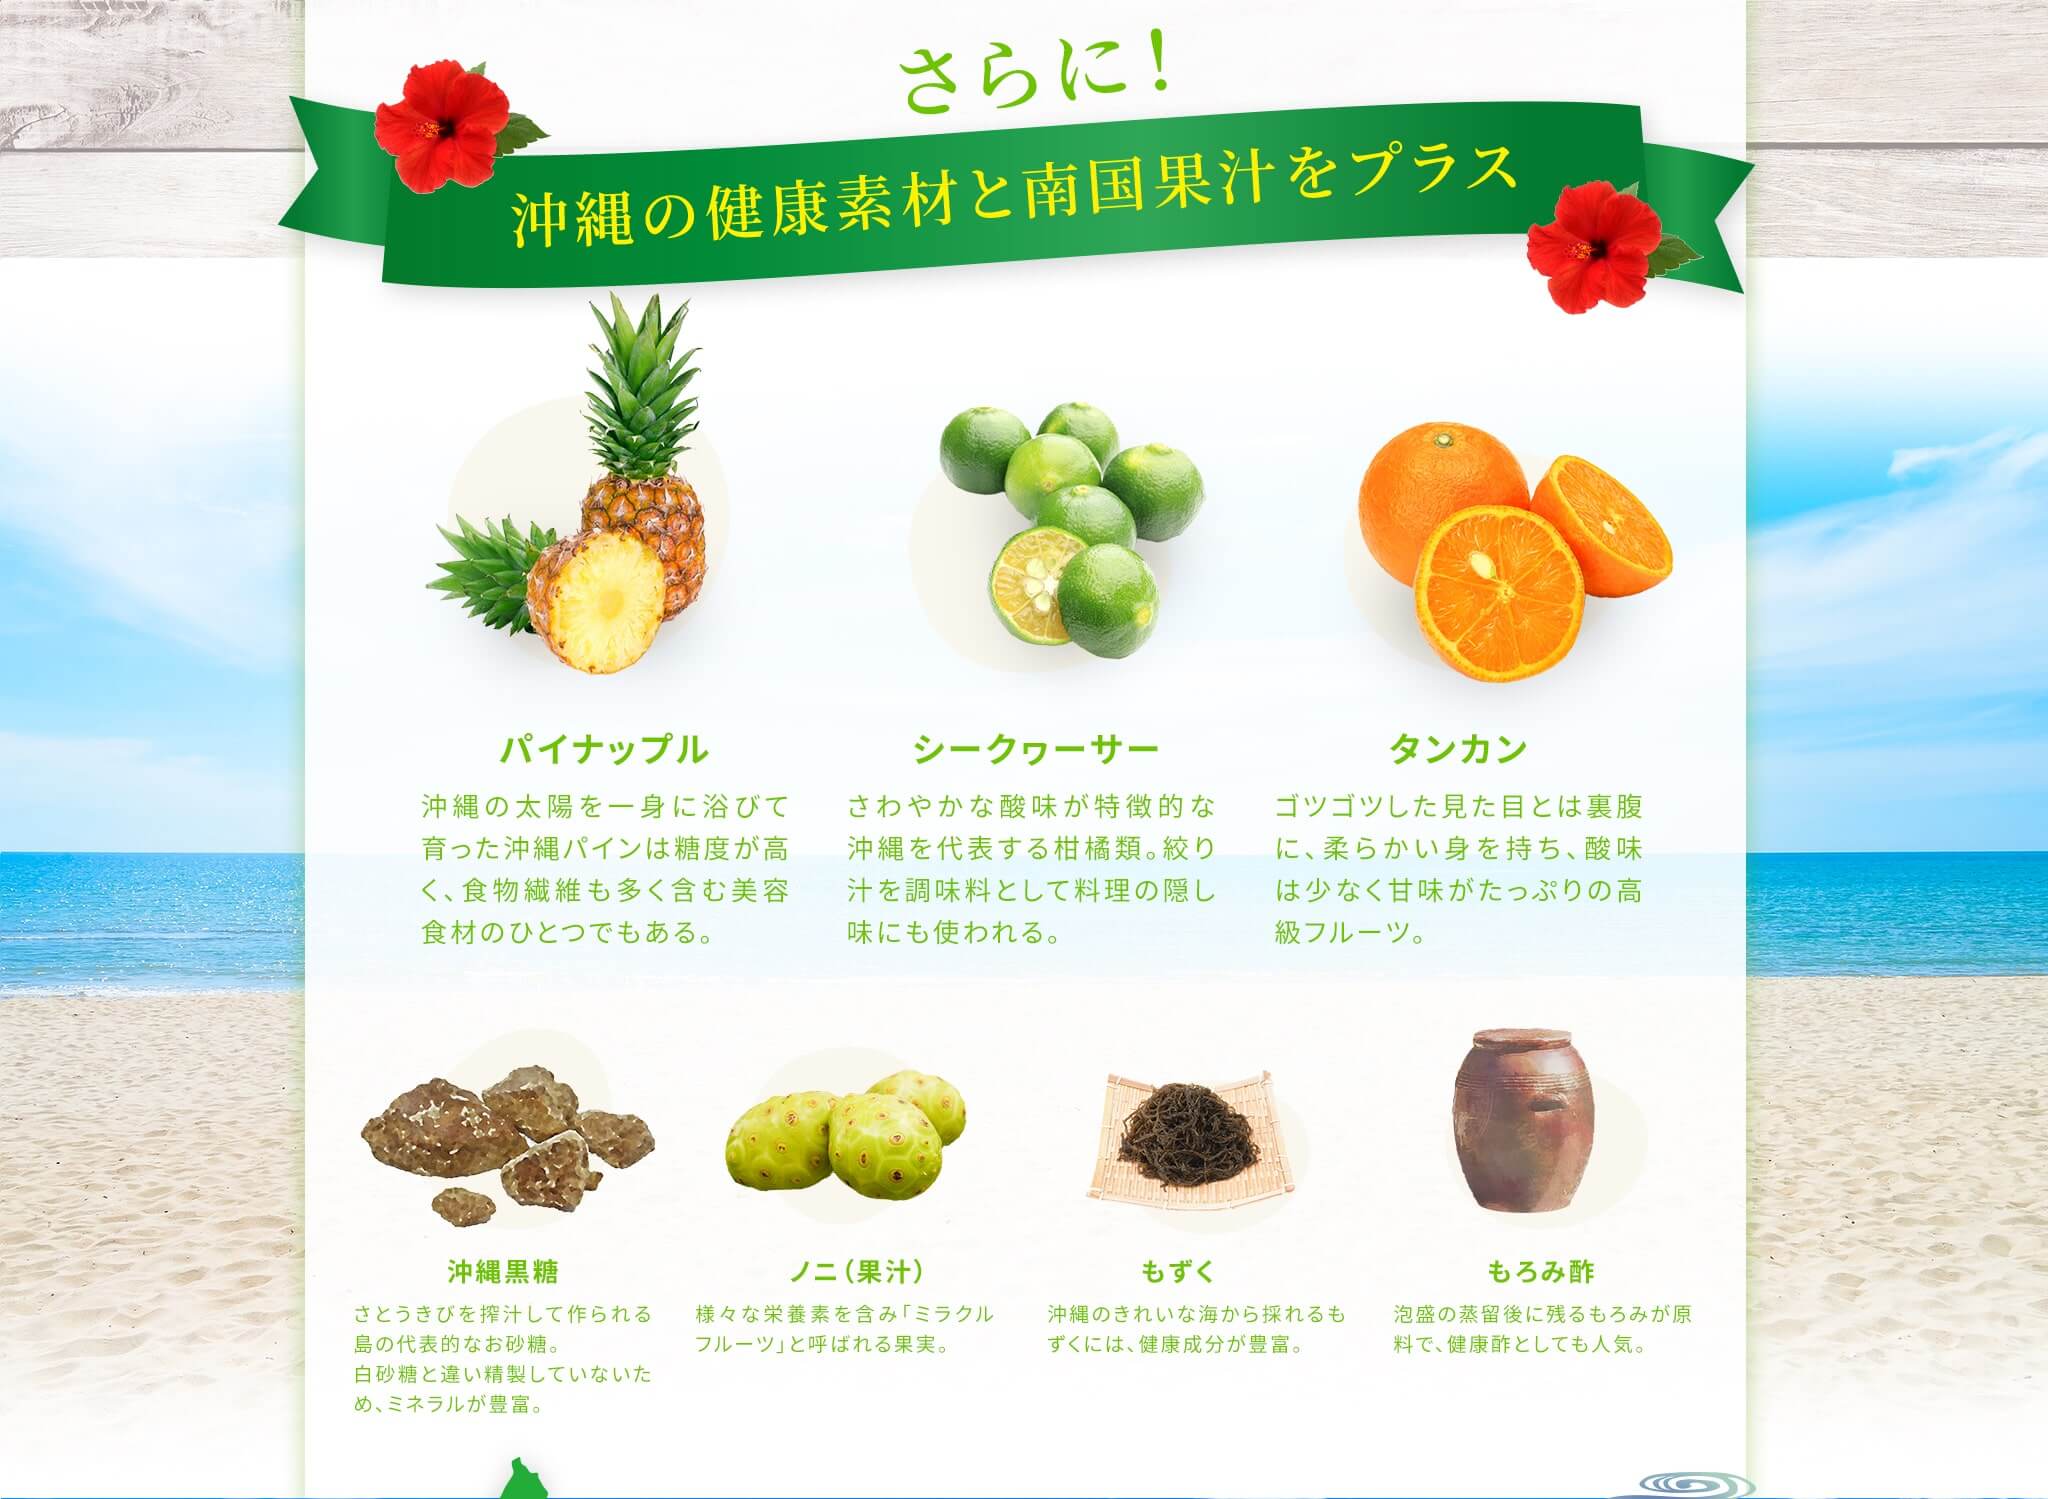 さらに沖縄の健康素材と南国果汁をプラス [もろみ酢] 泡盛の蒸留後に残るもろみが原料で、健康酢としても人気。 [もずく] 沖縄のきれいな海から採れるもずくには、健康成分が豊富。 [ノニ（果汁）] 様々な栄養素を含み「ミラクルフルーツ」と呼ばれる果実。 [沖縄黒糖] さとうきびを搾汁して作られる島の代表的なお砂糖。白砂糖と違い精製していないため、ミネラルが豊富。 [パイナップル] 沖縄の太陽を一身に浴びて育った沖縄パインは糖度が高く、食物繊維も多く含む美容食材のひとつでもある。 [シークヮーサー] さわやかな酸味が特徴的な沖縄を代表する柑橘類。絞り汁を調味料として料理の隠し味にも使われる。 [タンカン] ゴツゴツした見た目とは裏腹に、柔らかい身を持ち、酸味は少なく甘味がたっぷりの高級フルーツ。